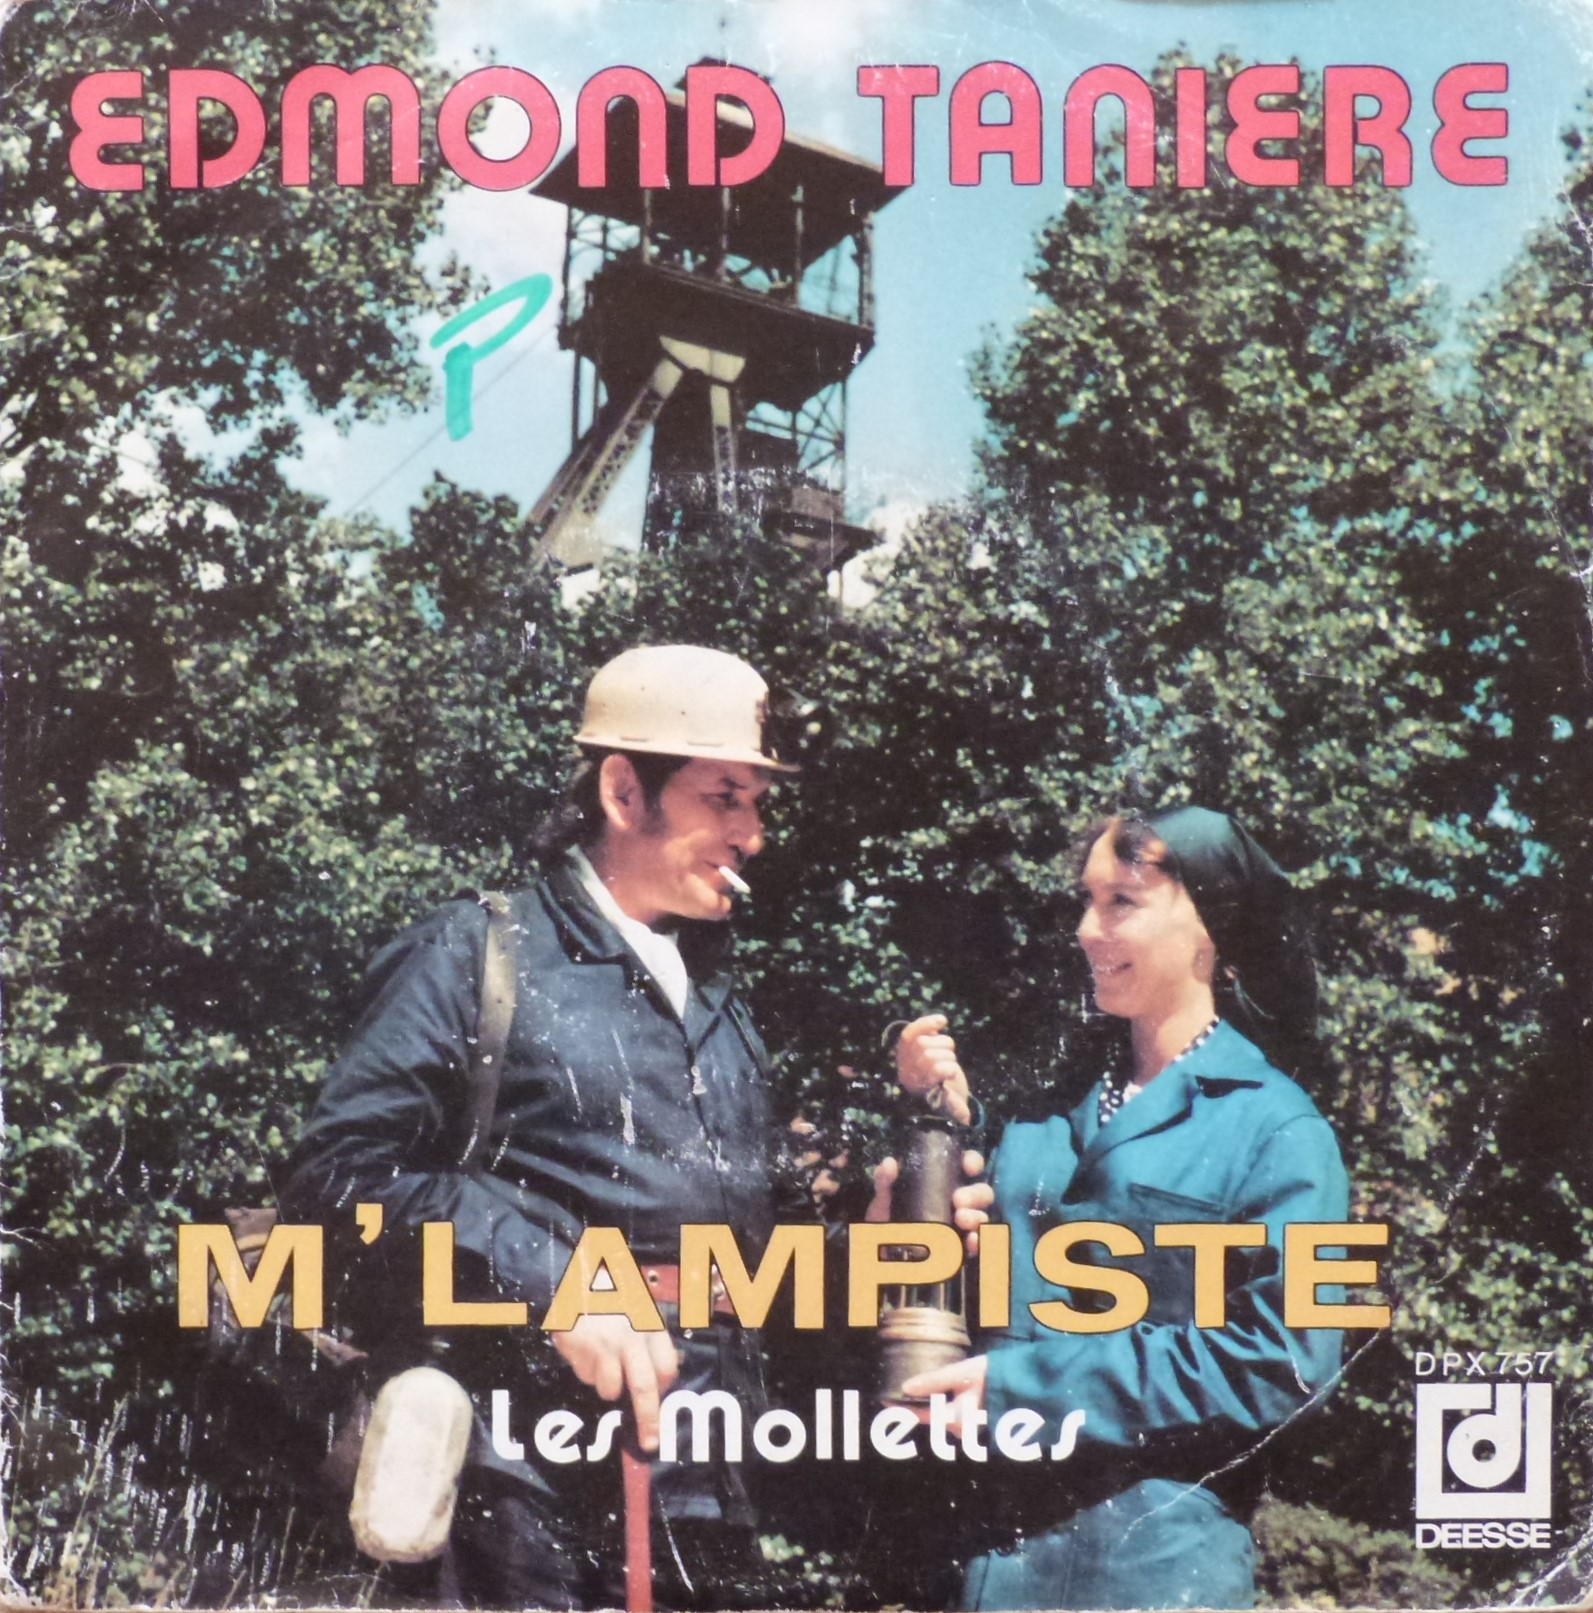 Edmond Tanière